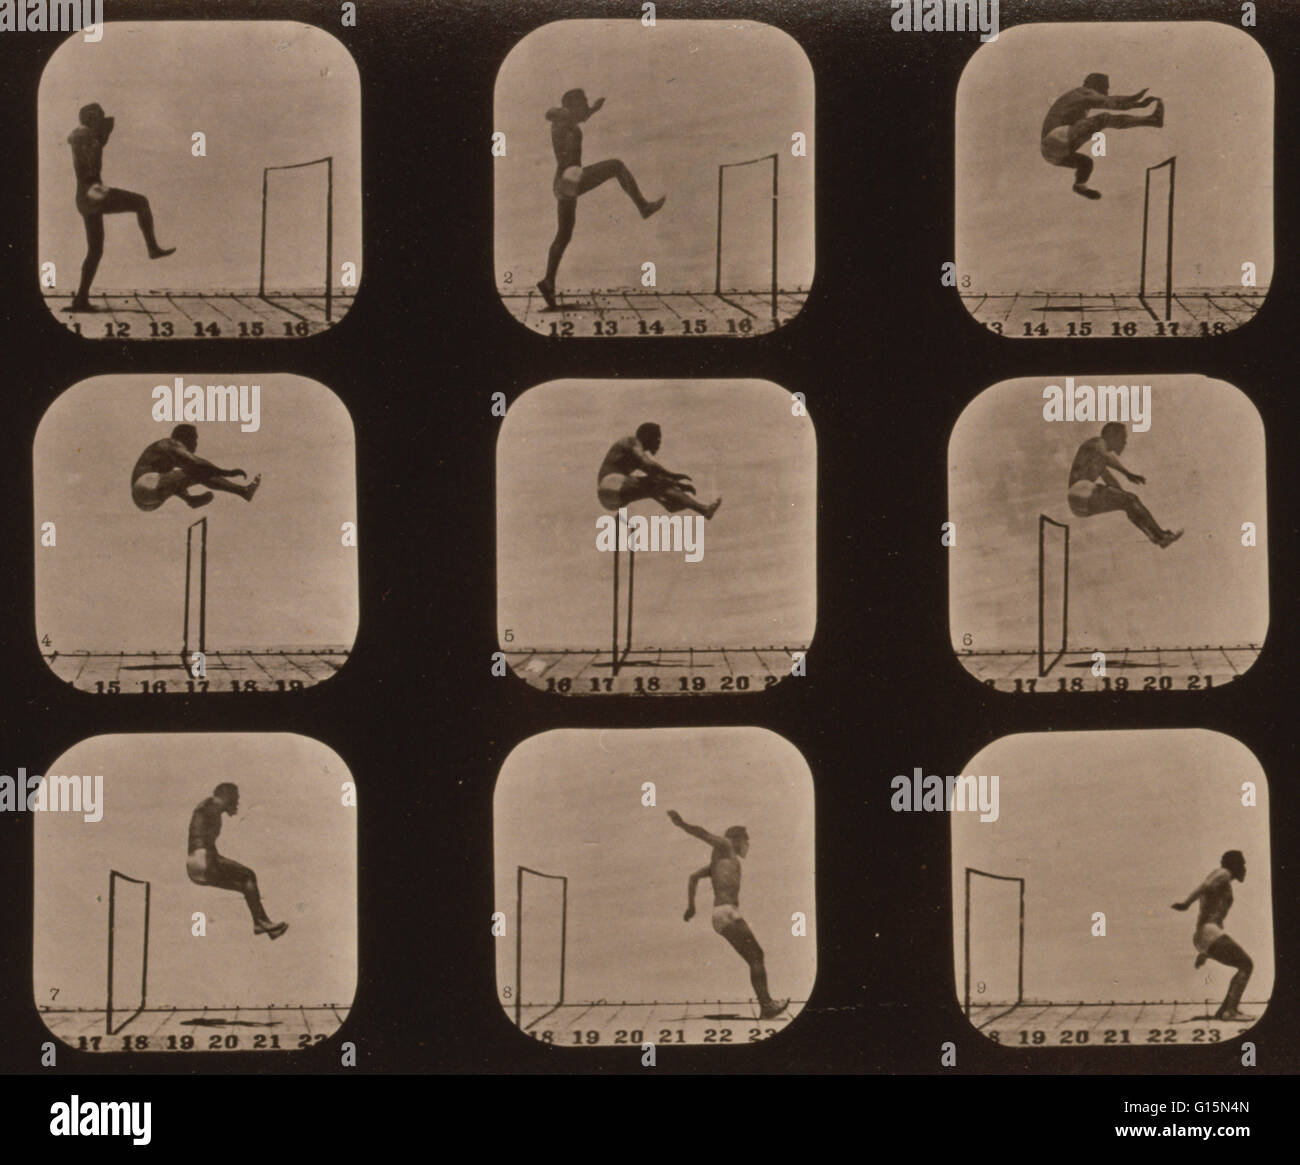 Muybridge la locomotion humaine, Man Jumping Hurdle, 1881. Photo montre 9 images consécutives d'un homme sautant par dessus un obstacle. Eadweard James Muybridge (9 avril 1830 - 8 mai 1904) était un photographe anglais important pour son travail de pionnier en photographi Banque D'Images